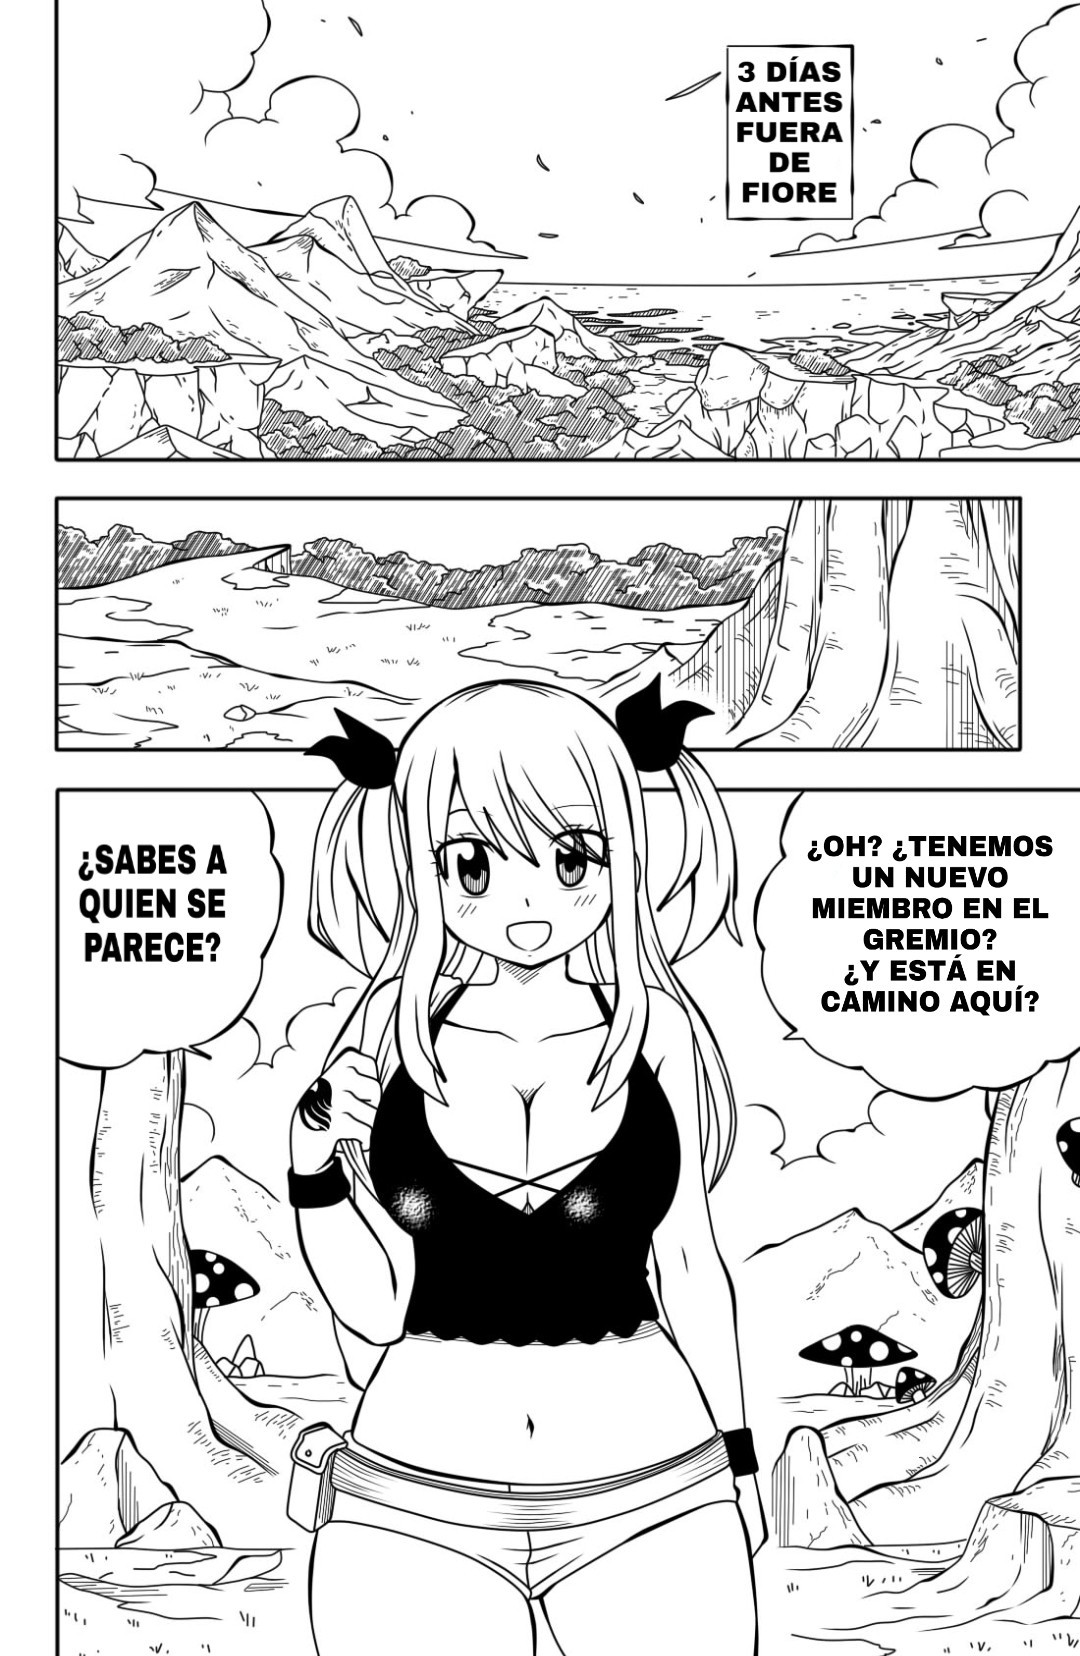 [DMAYaichi] Fairy Tail H Quest #1 - 4